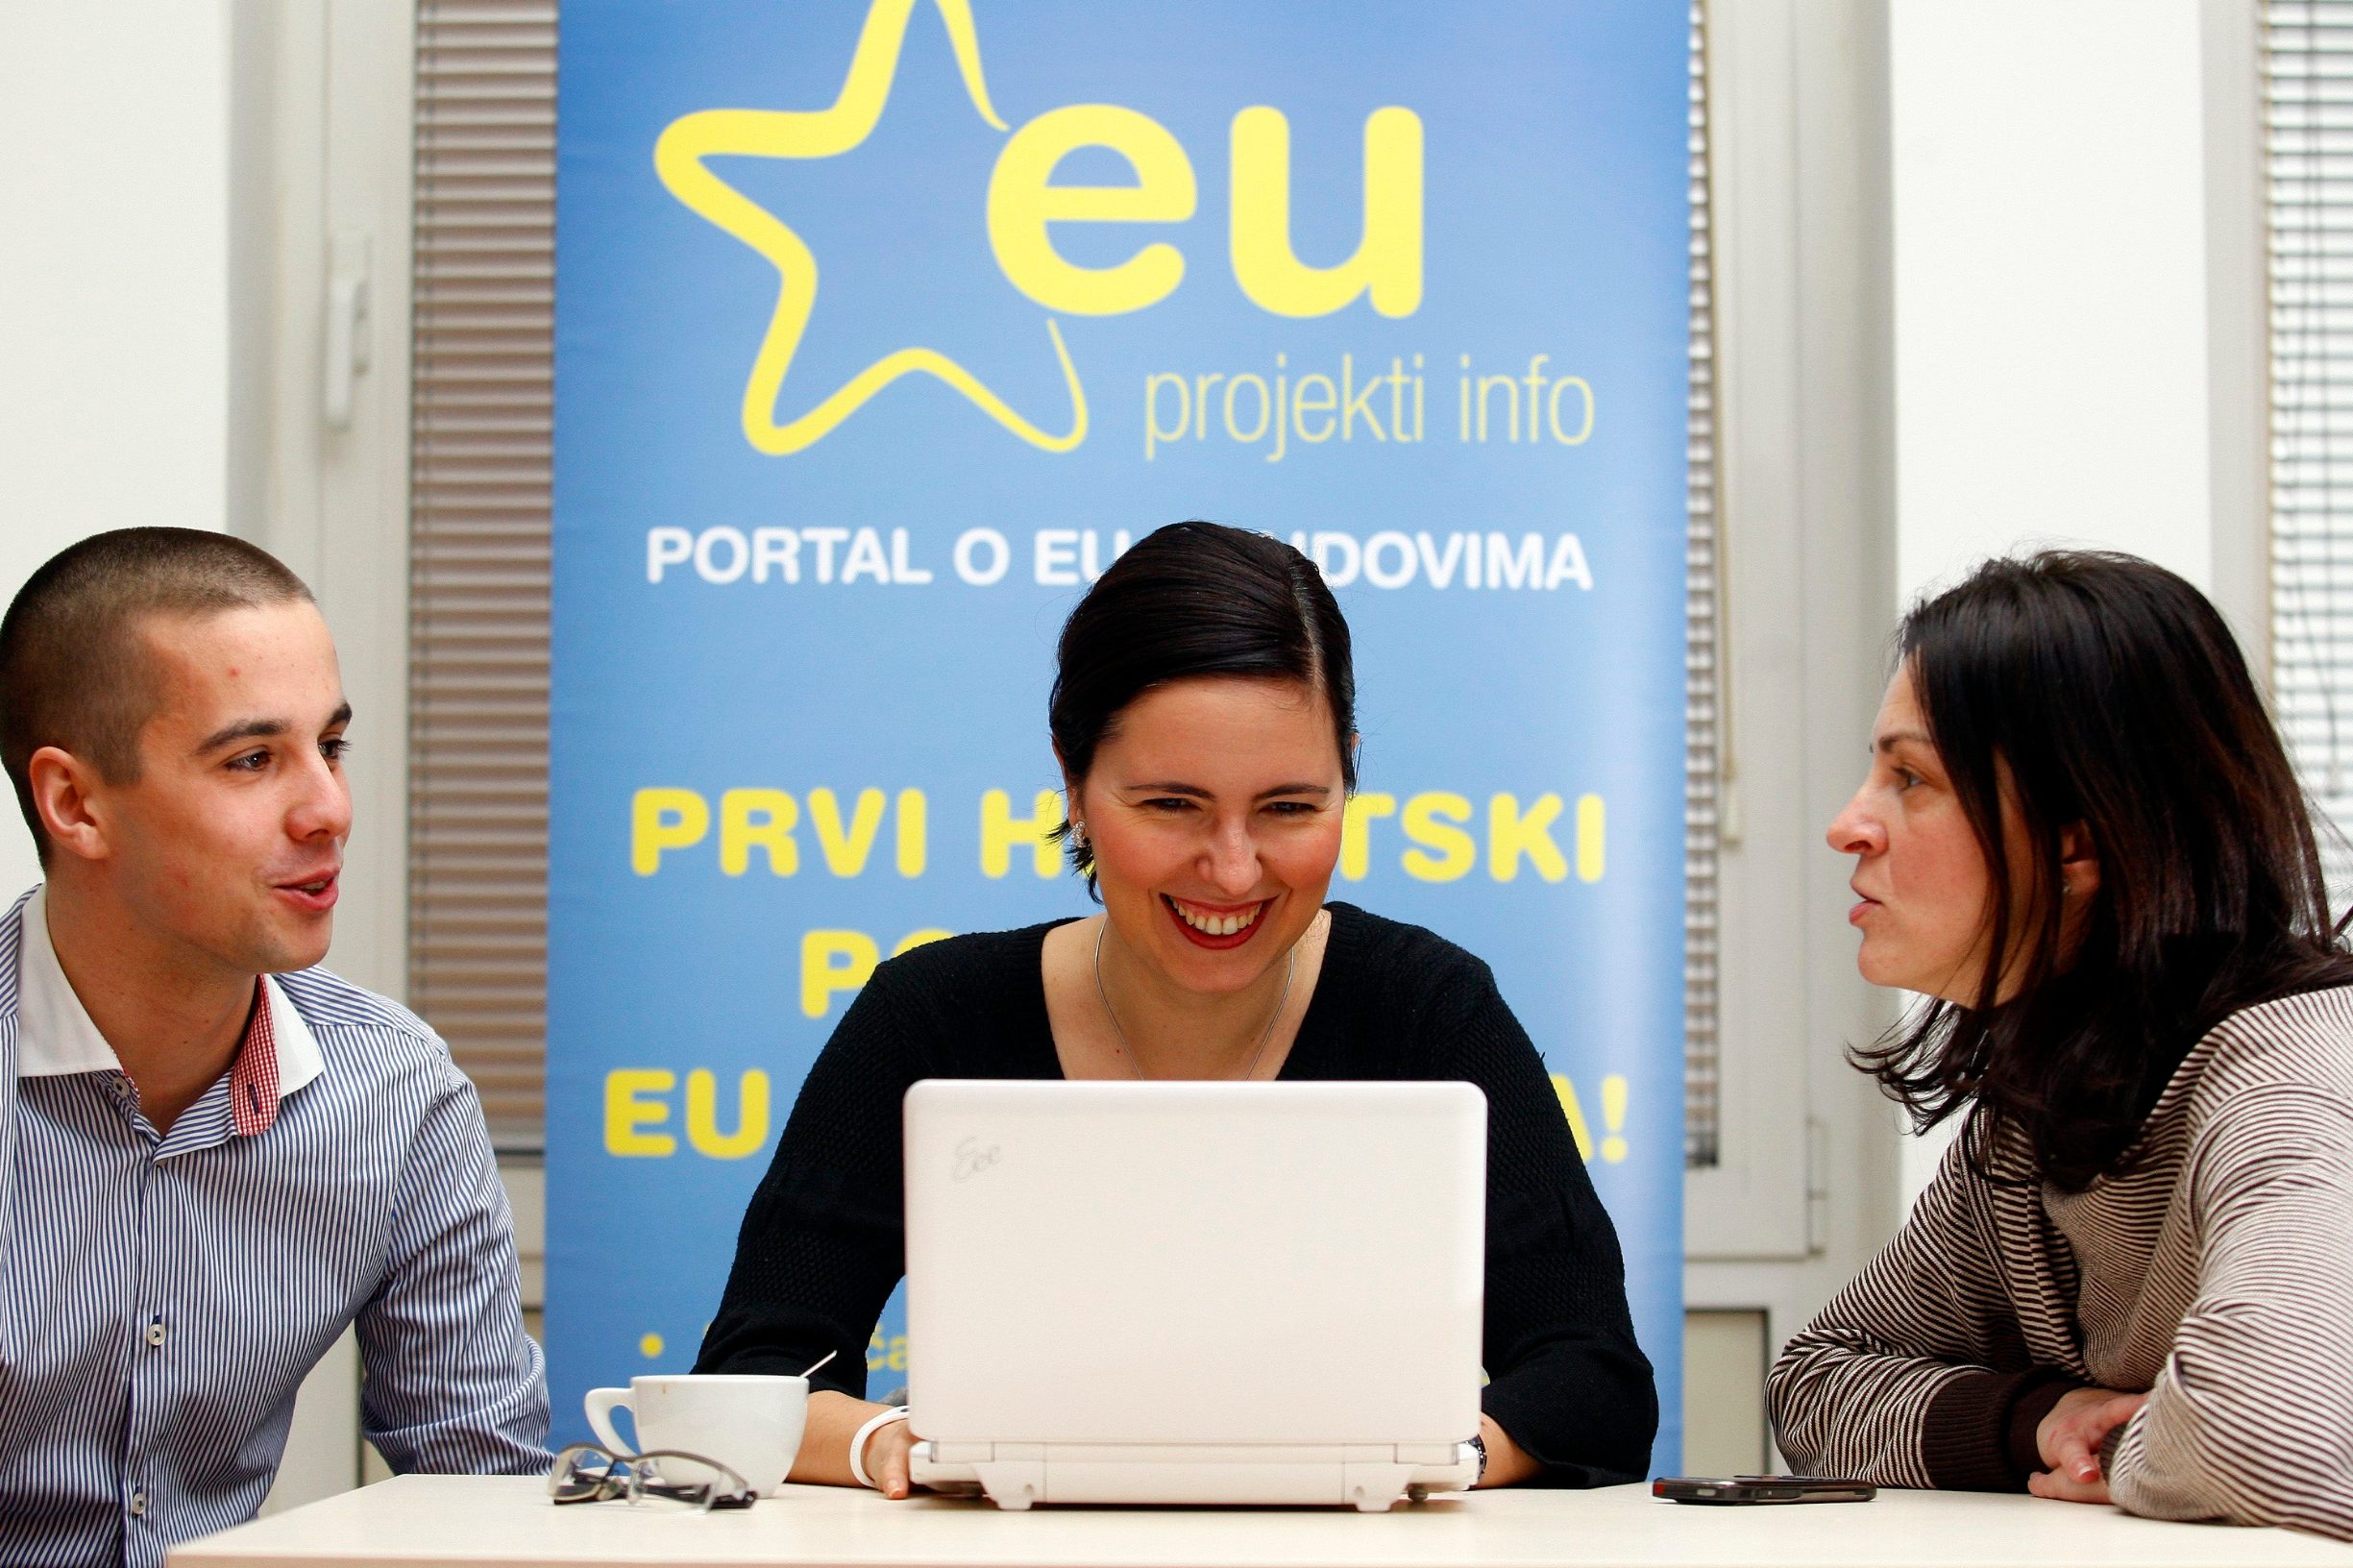 Ariana Vela direktorica je portala EU Projekti ciji je cilj informiranje o fondovima Europske unije.